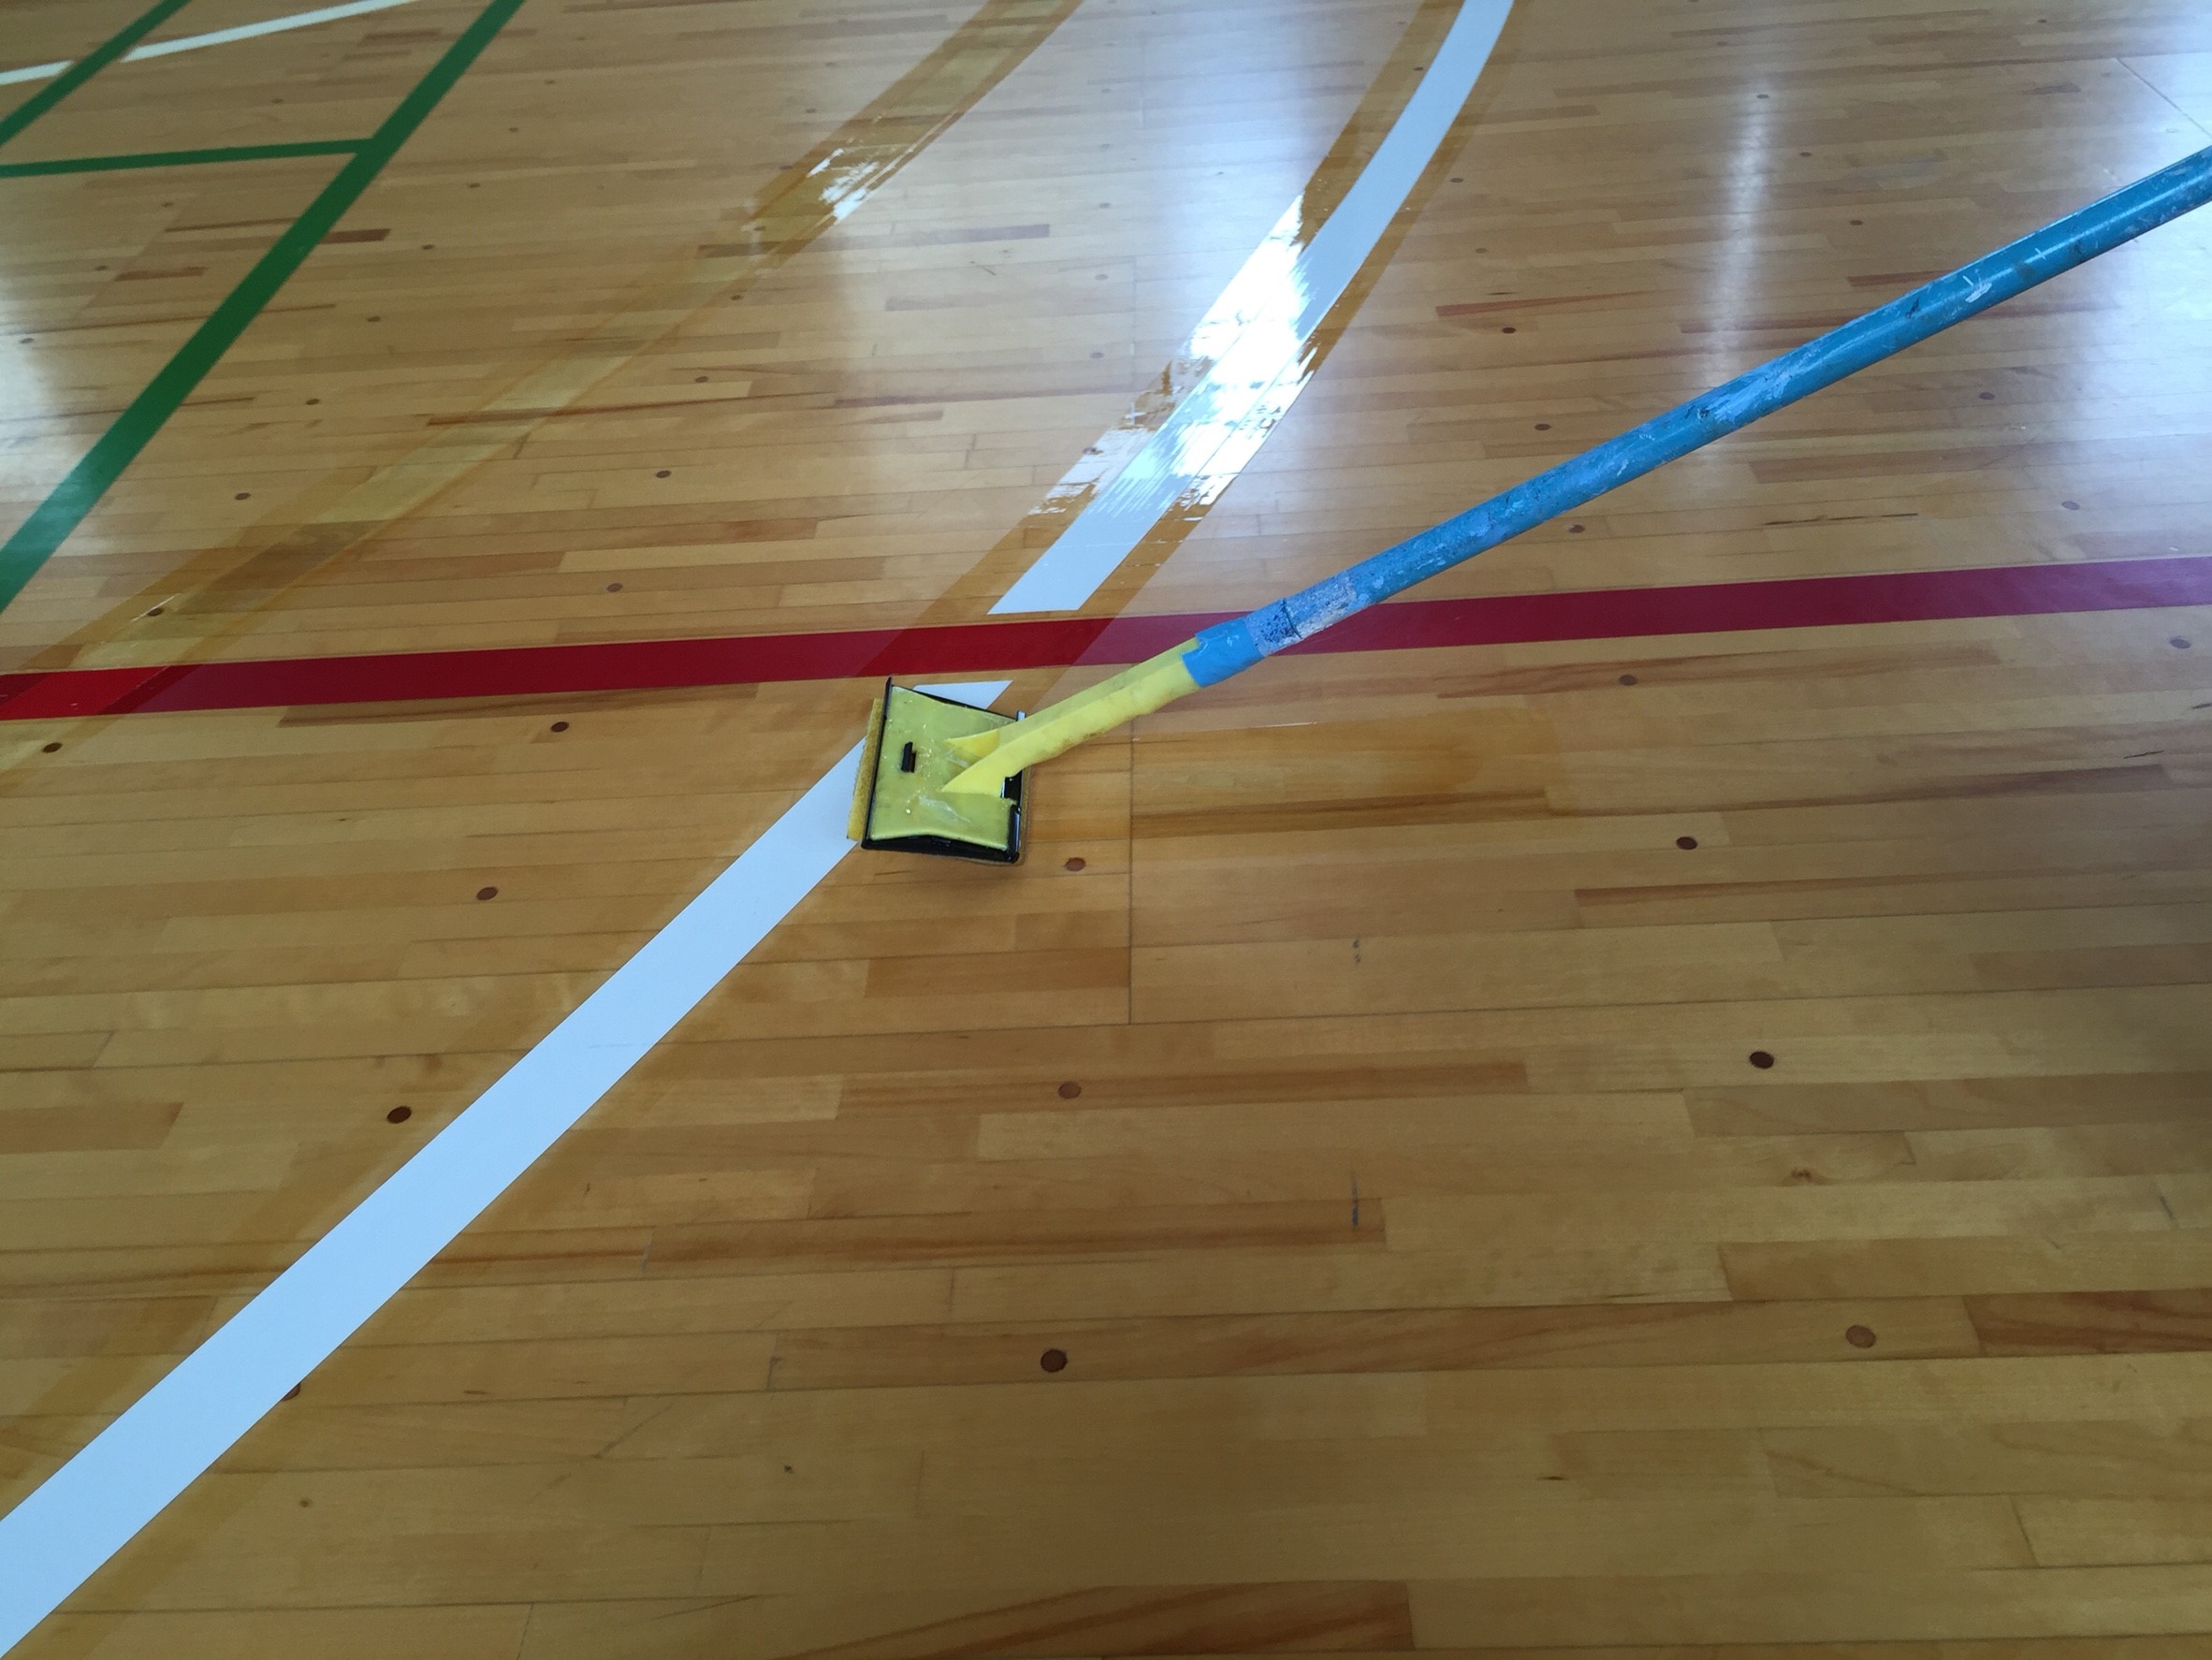 新潟県内バスケットボールコートライン新ルールデザイン変更工事